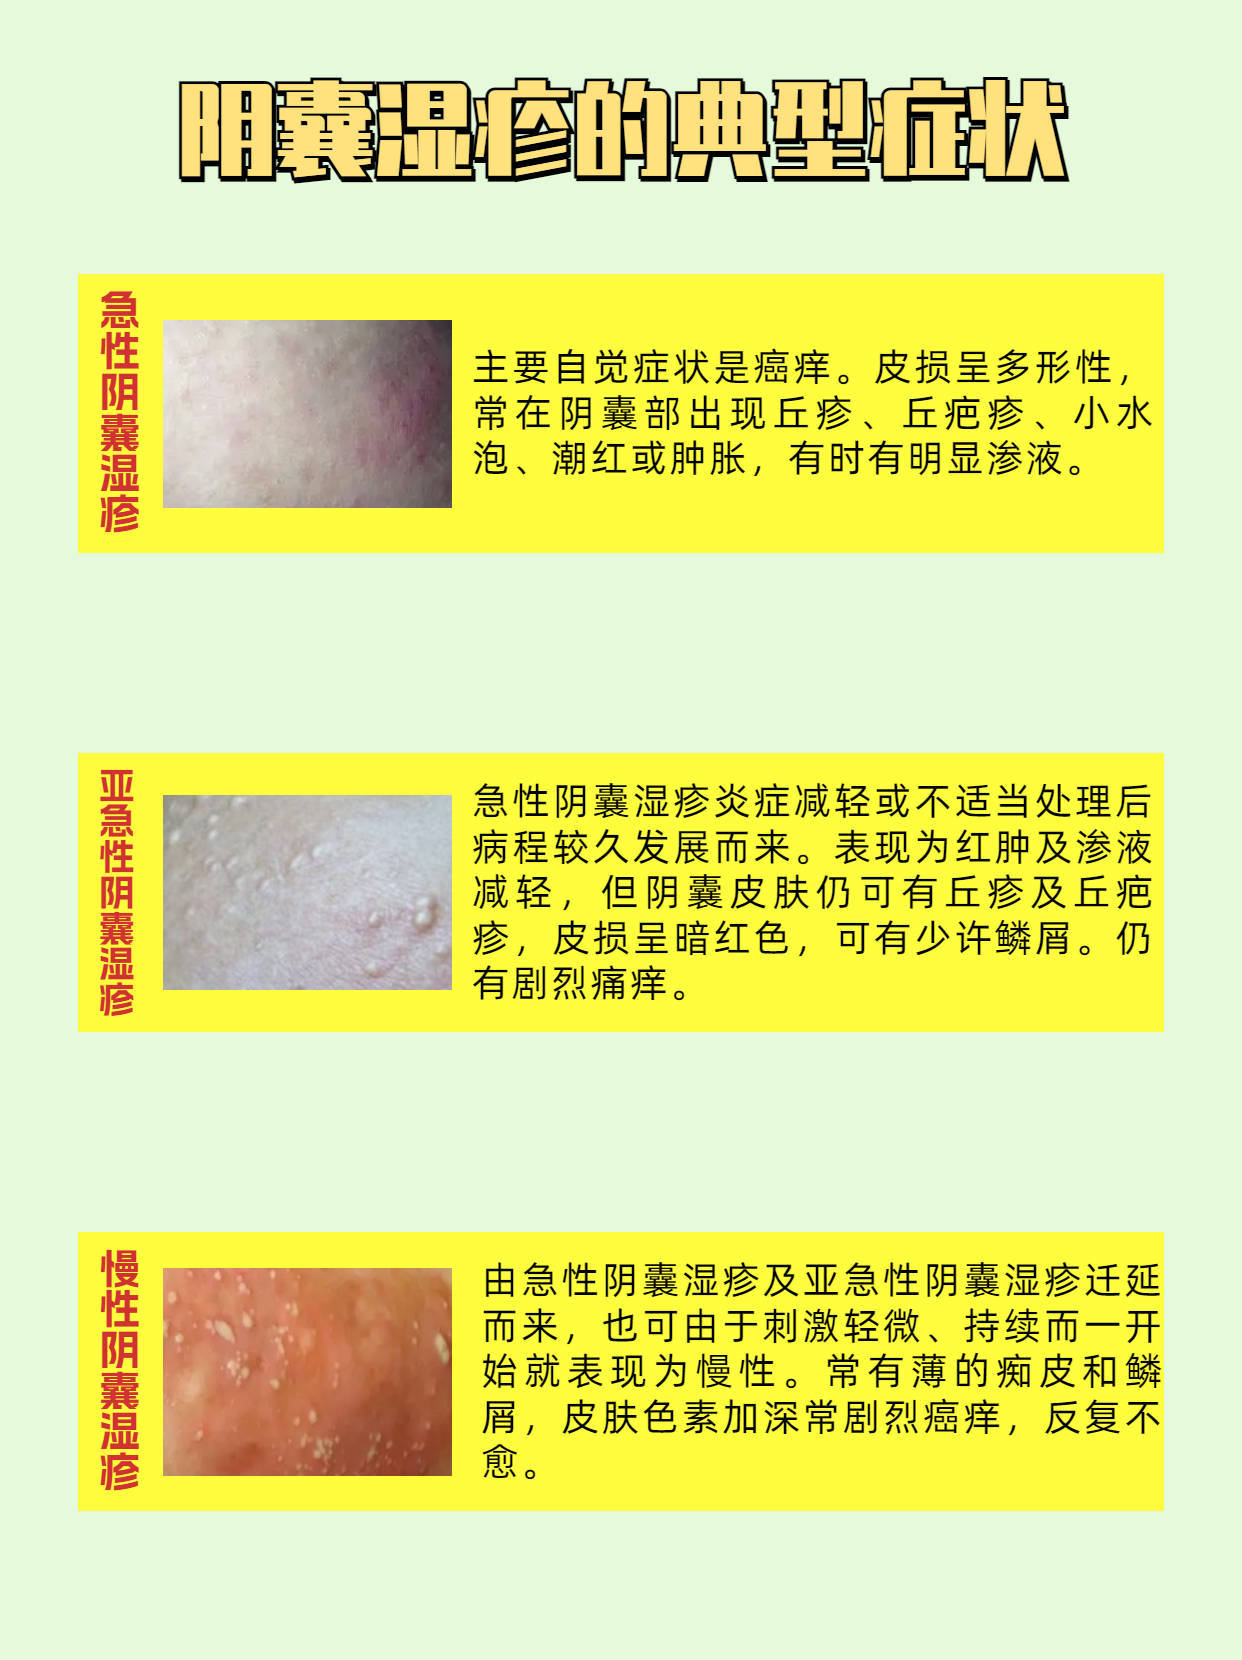 阴囊湿疹症状两侧图片